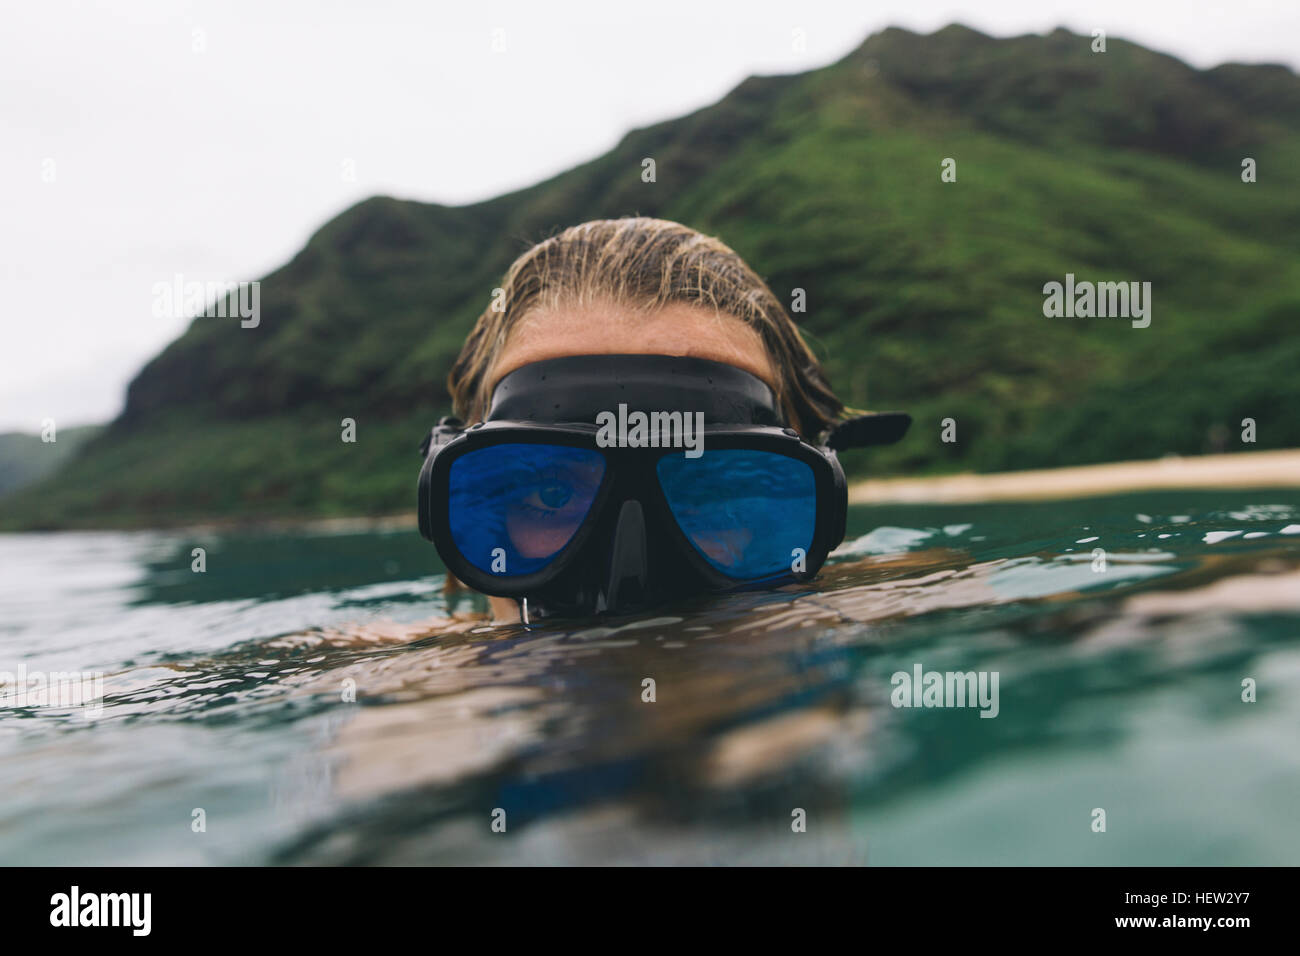 Nuotatore che indossa gli occhiali di protezione in prossimità della superficie del mare Foto Stock